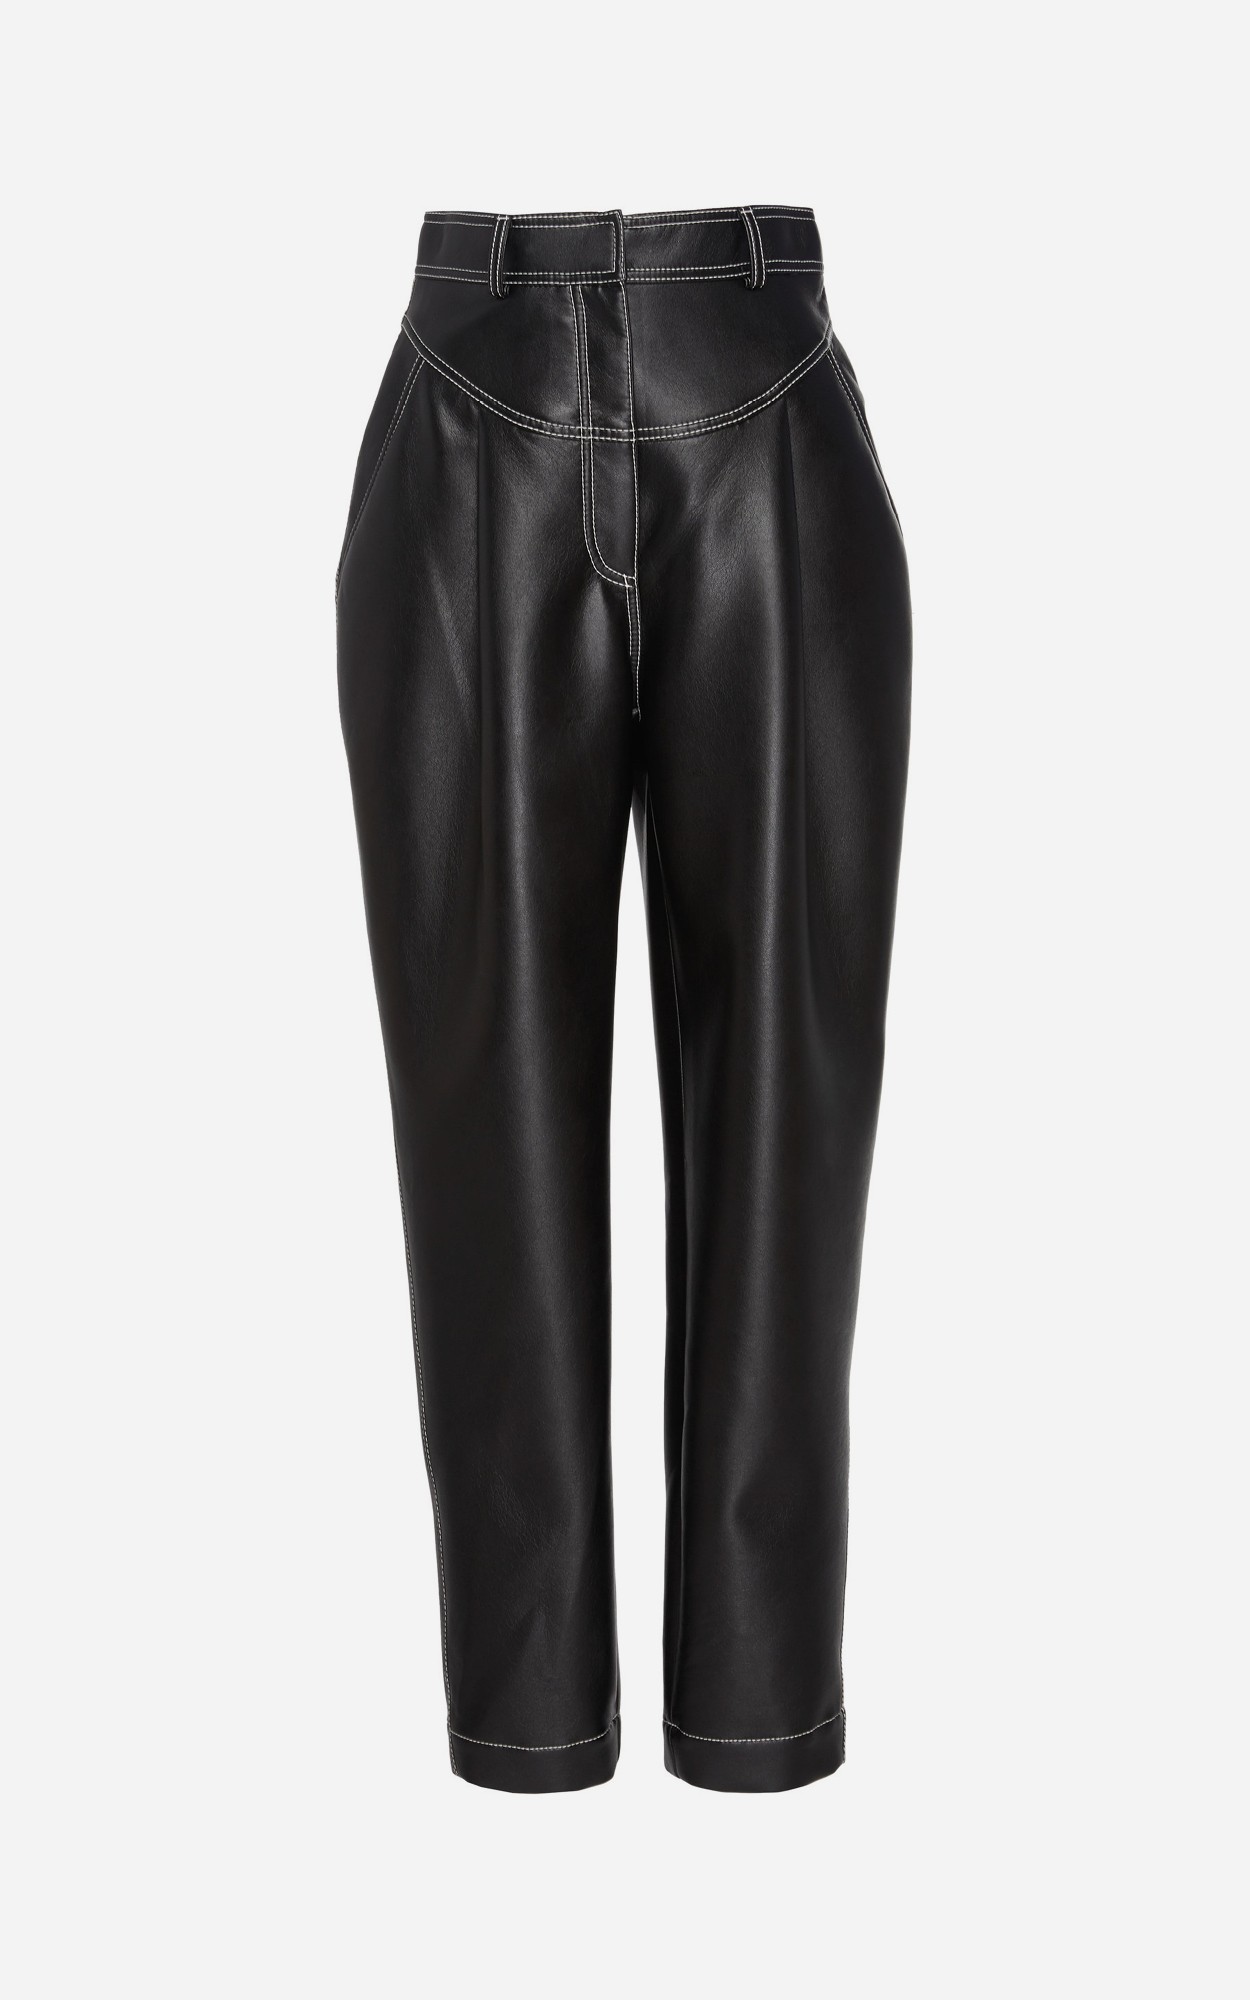 В моде черная кожа — как у Saint Laurent. Выбирайте: кожаные платья, юбки и даже шорты 